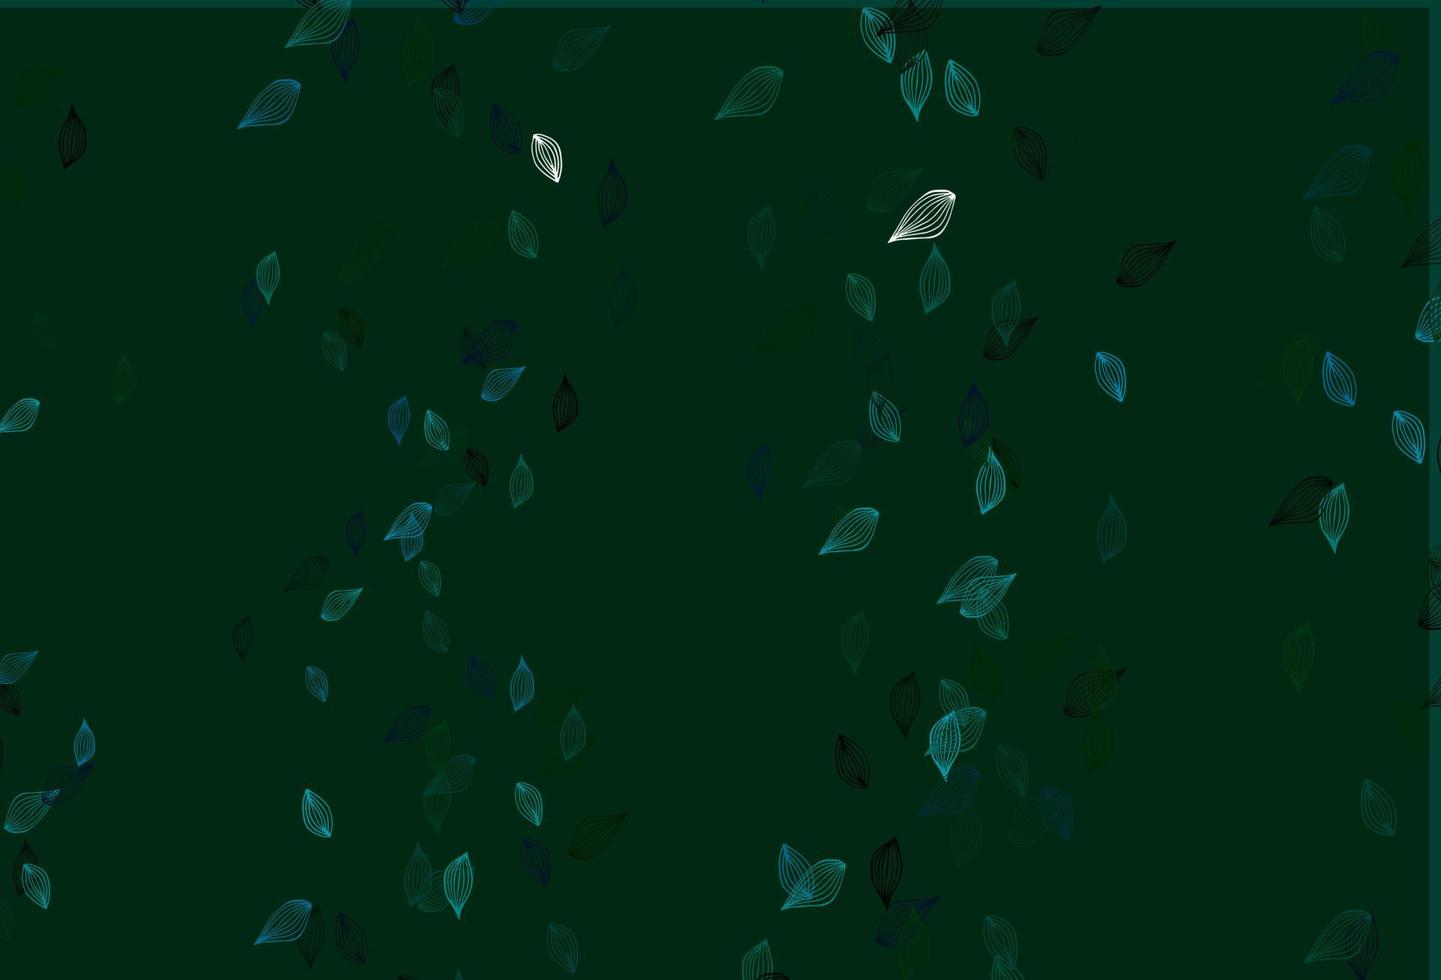 ljusblå, grön vektor doodle bakgrund.